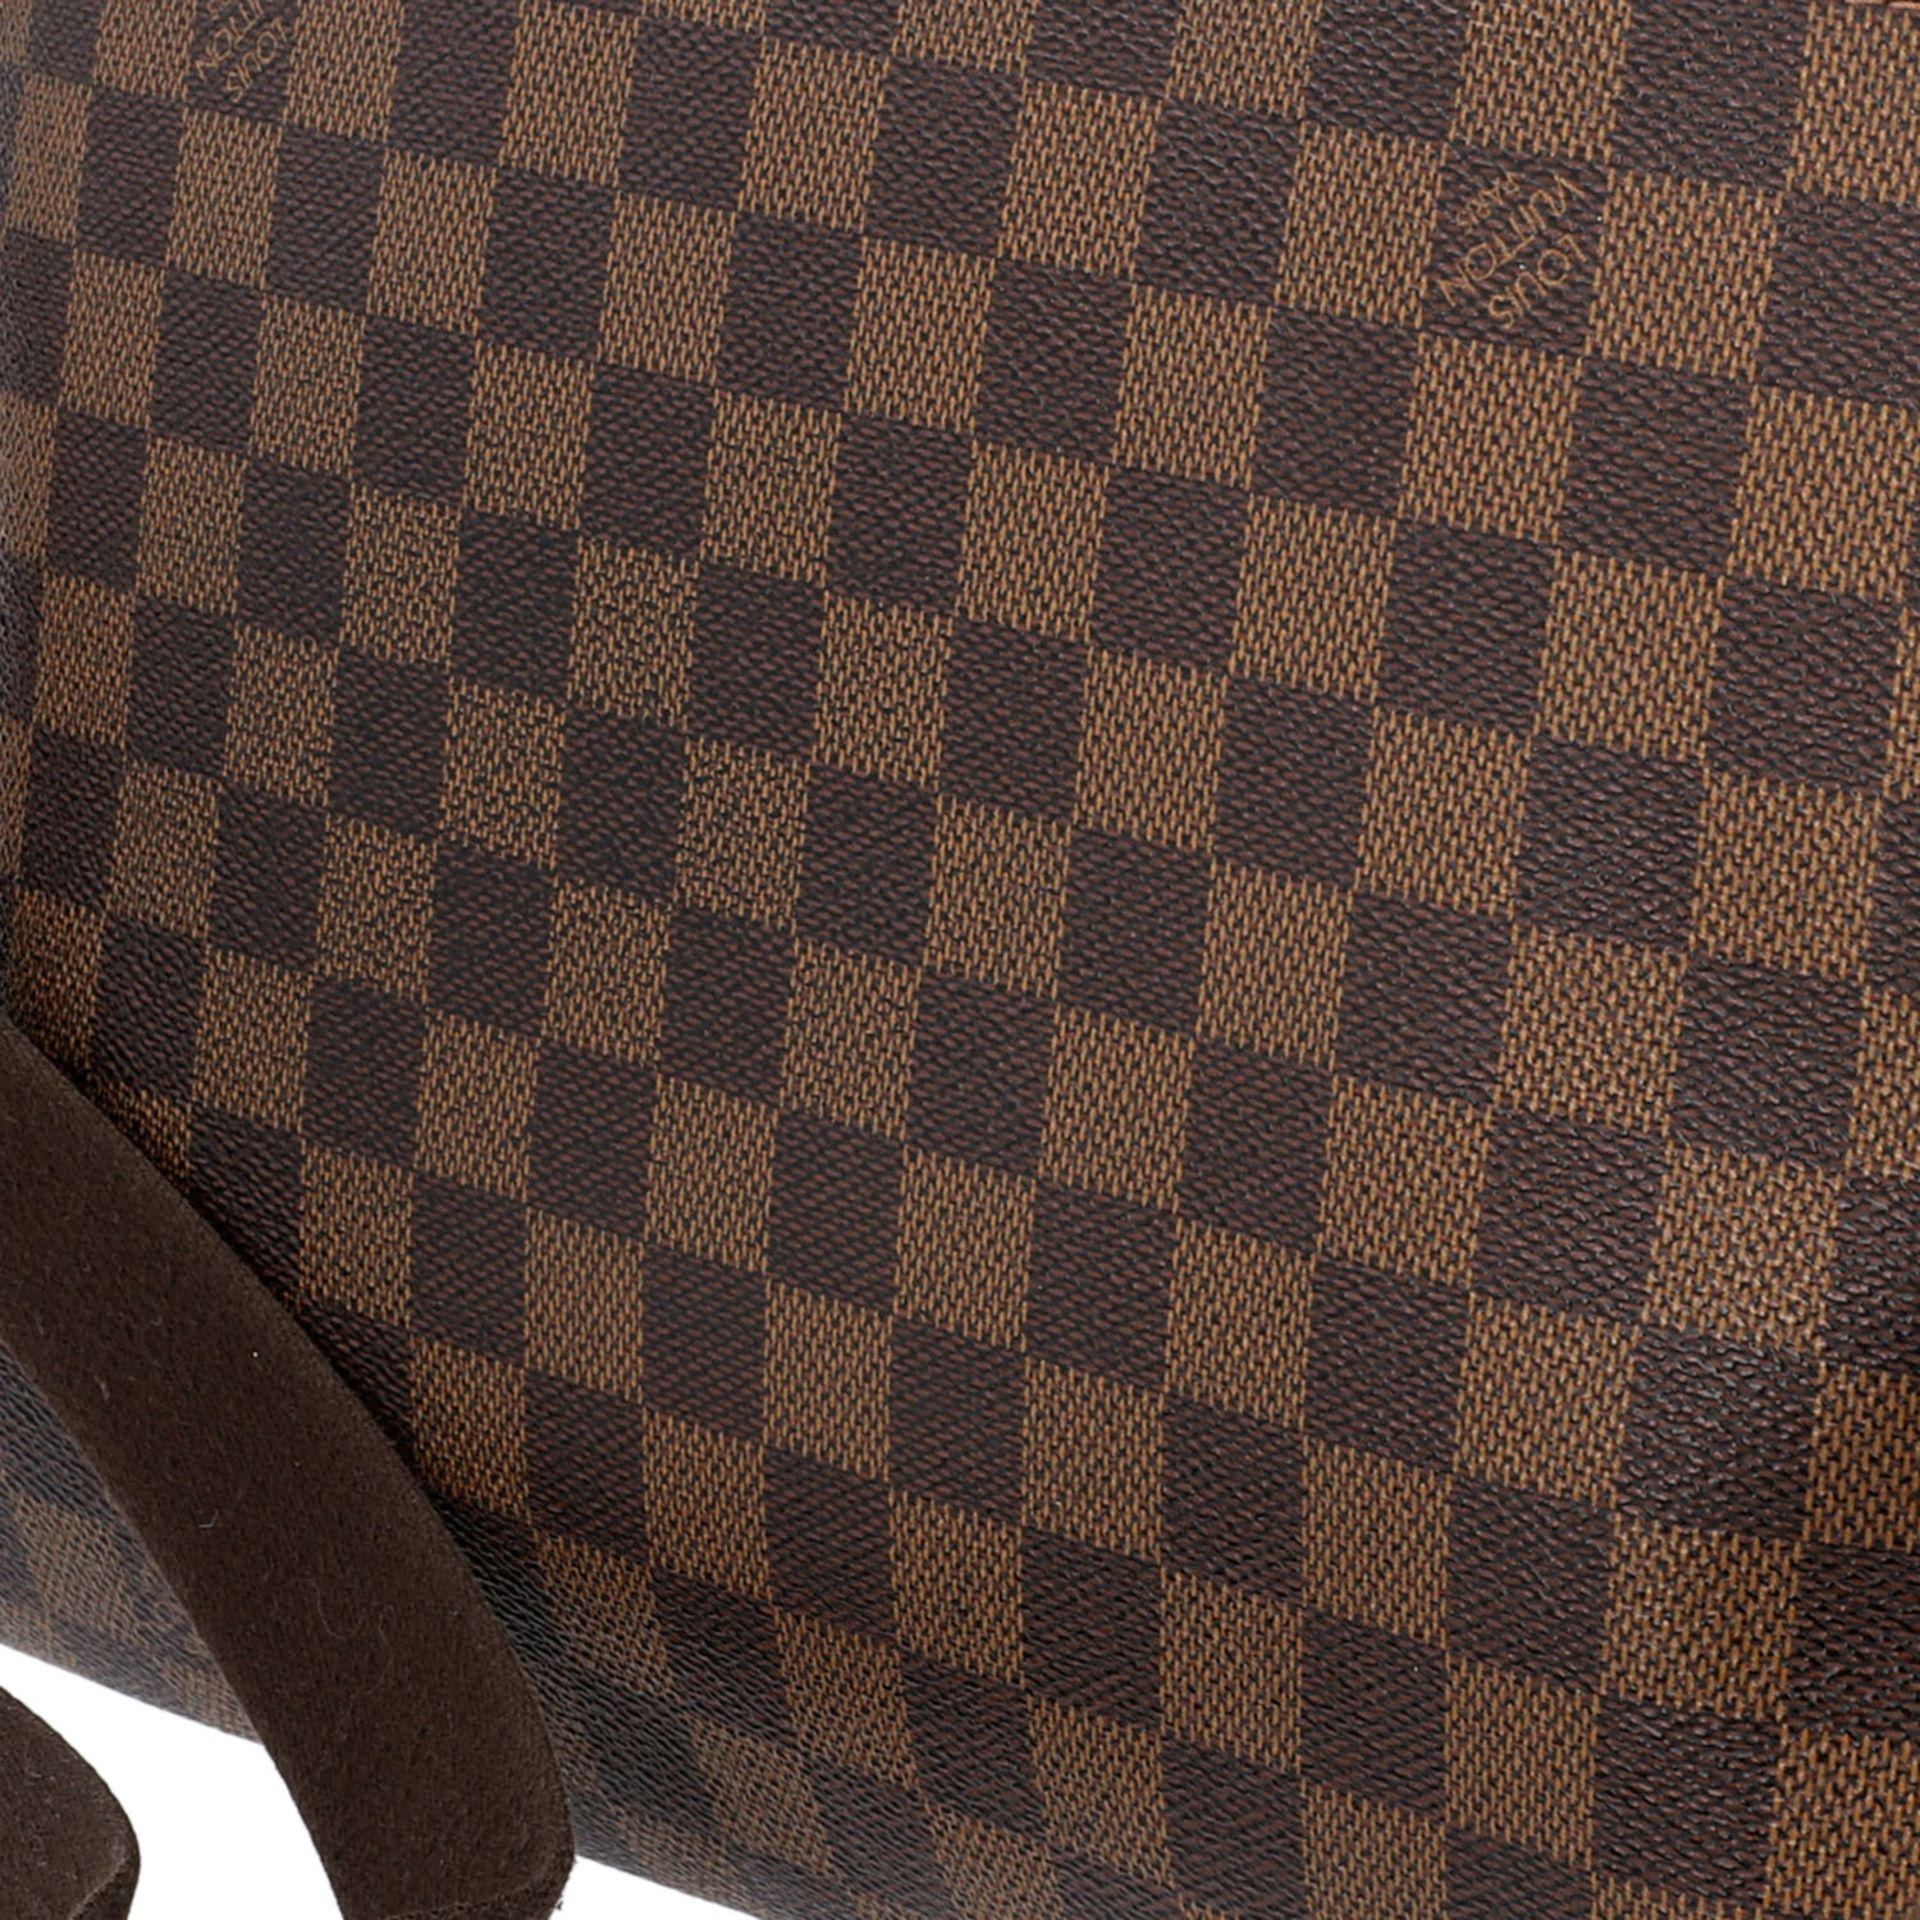 LOUIS VUITTON Messenger Bag, "BROOKLYN MM", Koll. 2010.Damier Ebene Serie mit textilem - Bild 7 aus 8